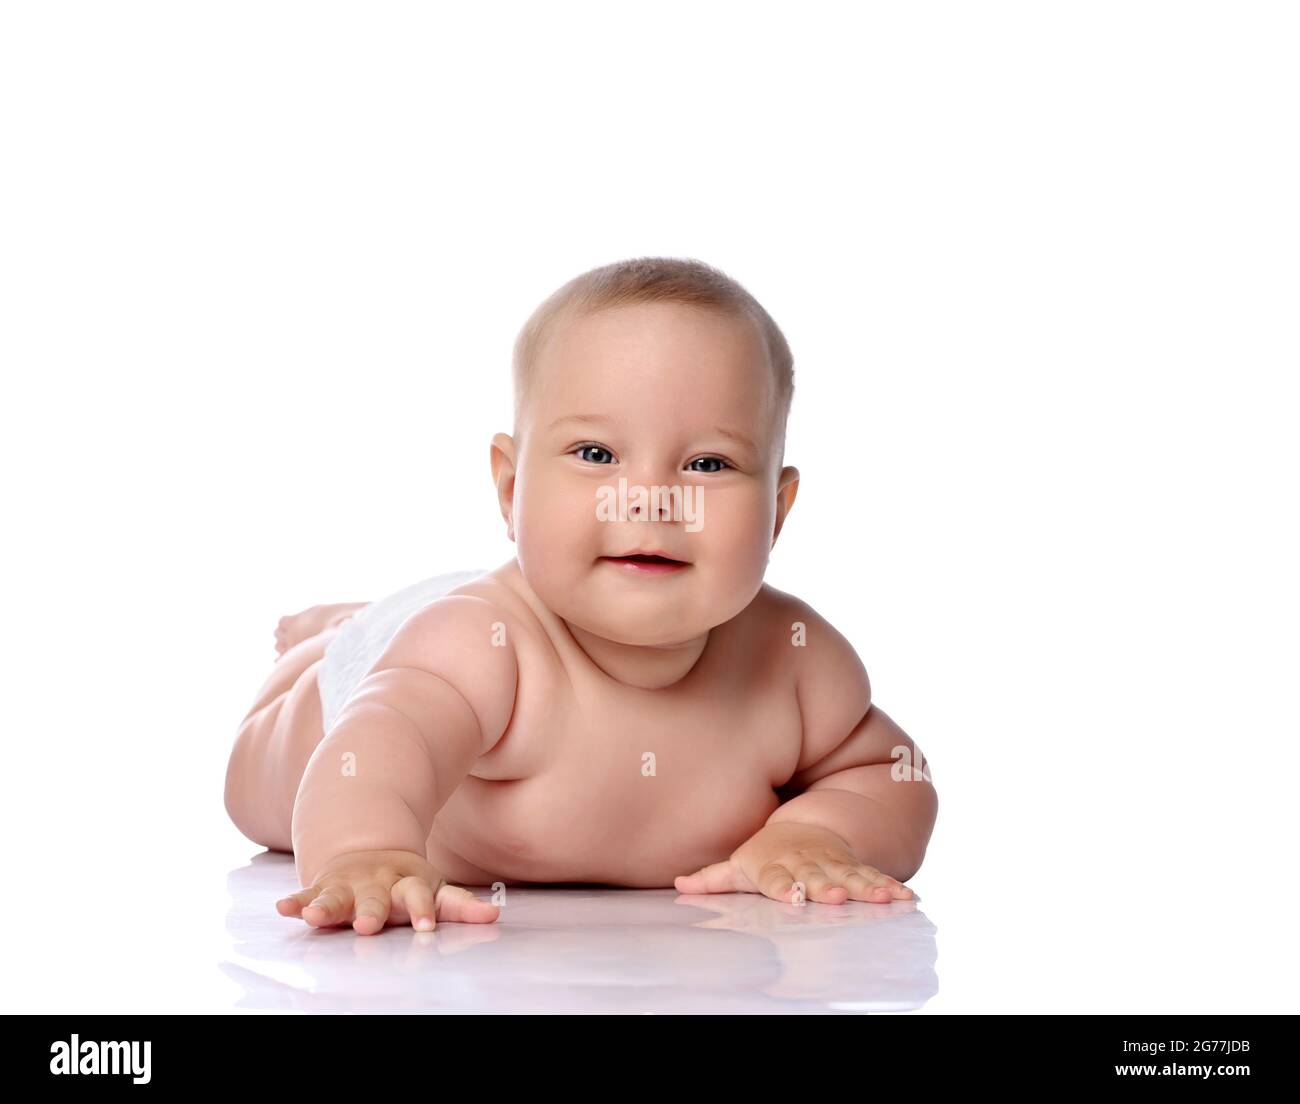 Spielerisch Kleinkind Baby Mädchen Kind in Windel liegt auf ihrem Bauch versucht zu erreichen, berühren Kamera, schlagen auf dem Boden Stockfoto